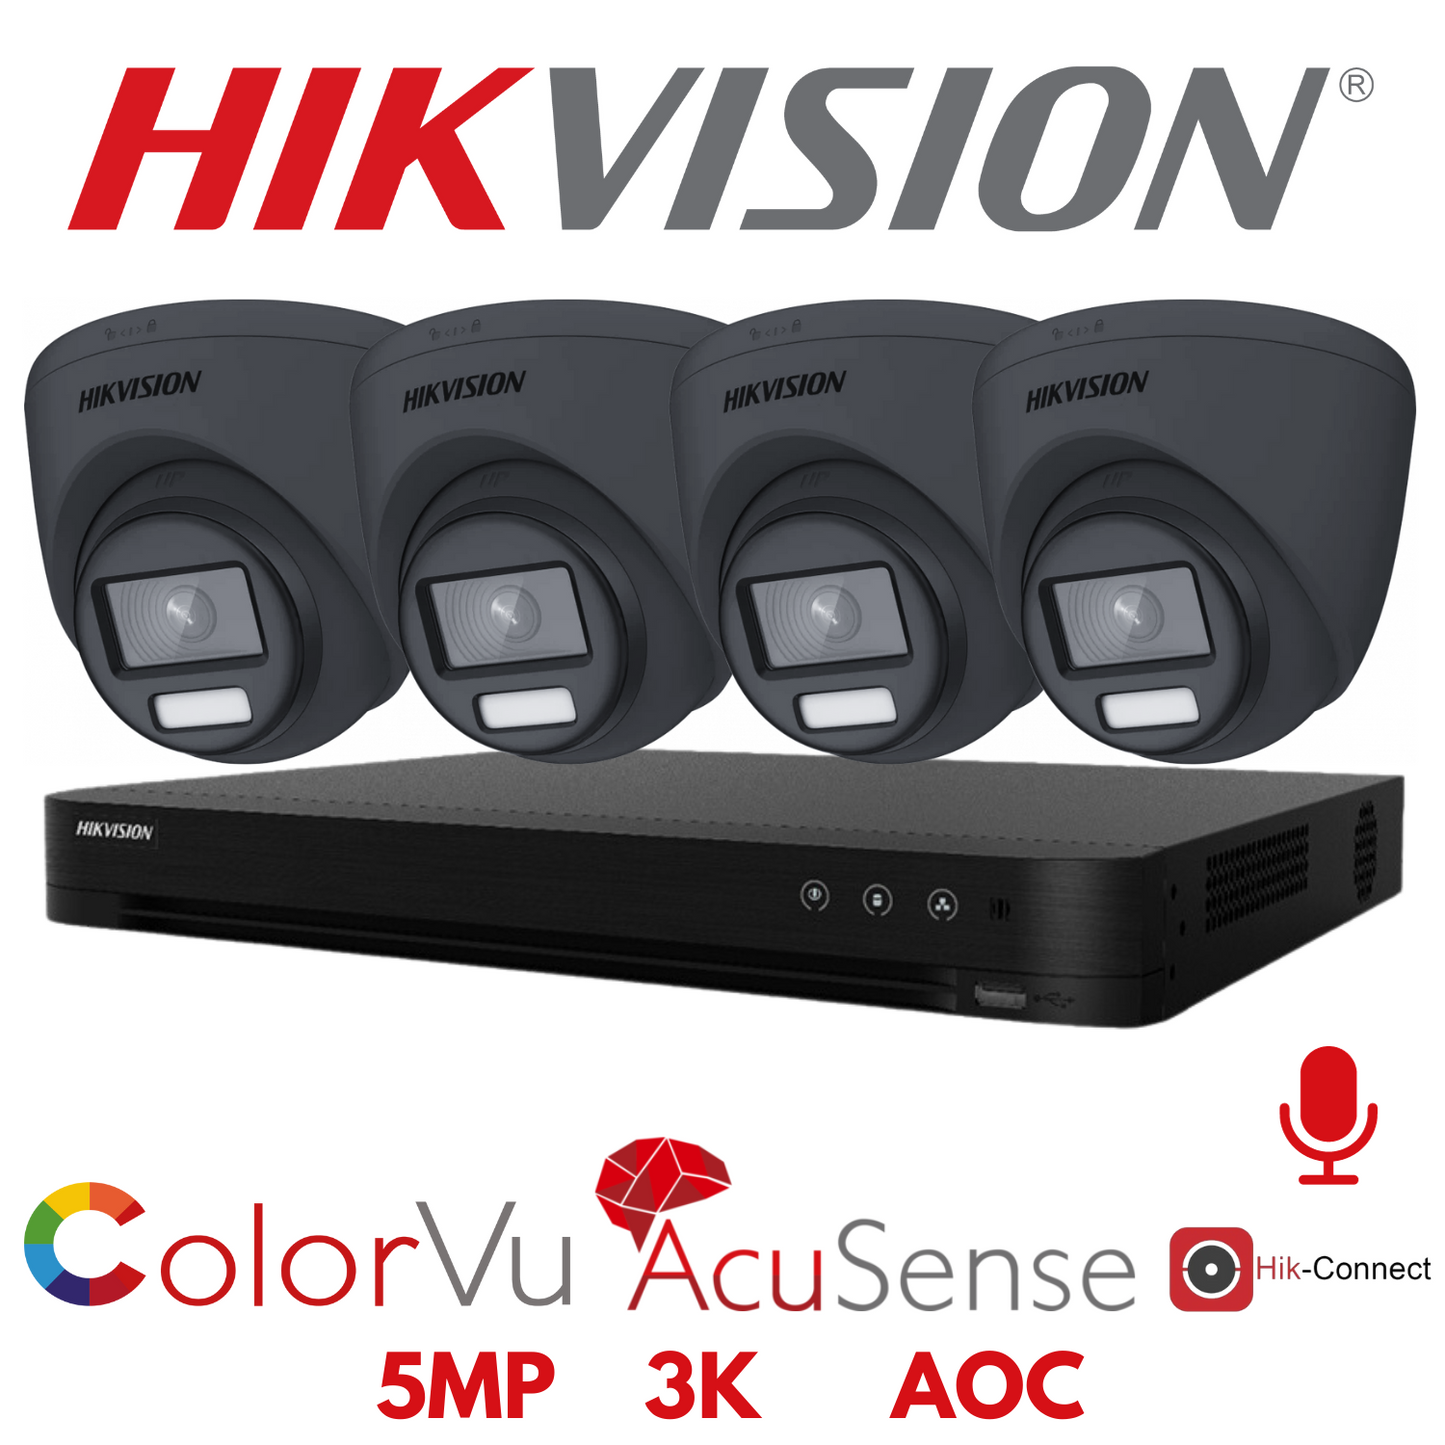 5mp 4ch Hikvision ColorVu Cctv Kit 4x 24hr Colour AOC DVR Camera Kit - Built in Microphones